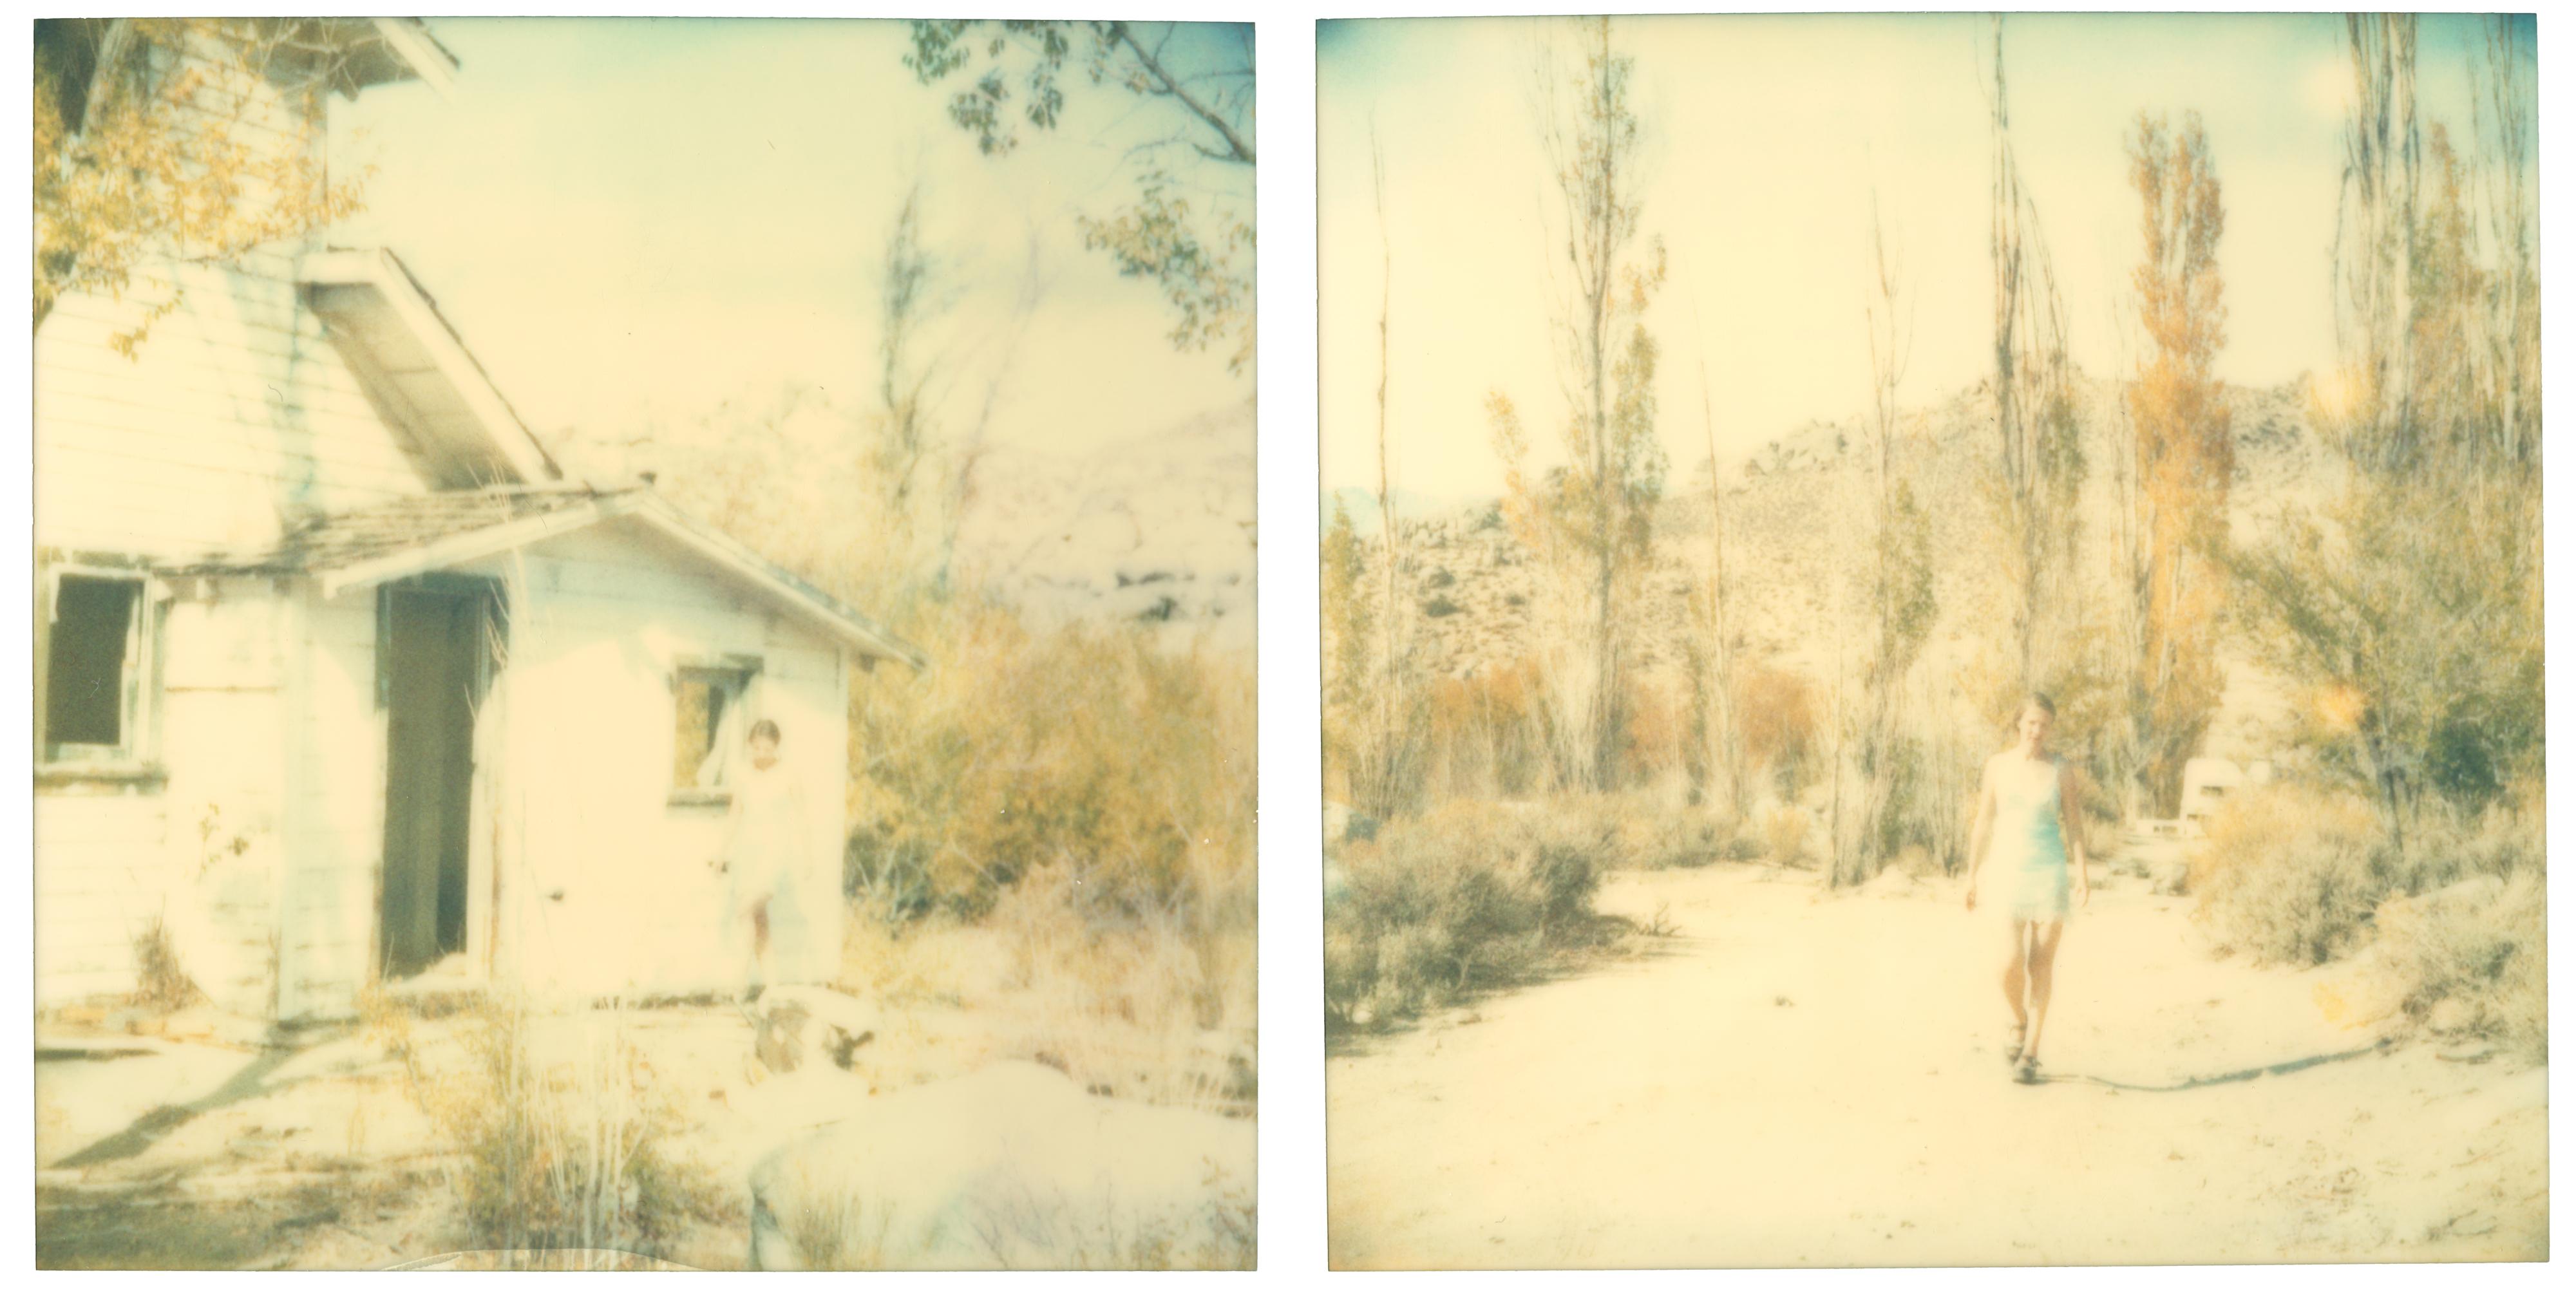 Color Photograph Stefanie Schneider - La dernière saison (Wastelands), diptyque - Polaroid, expiré. Contemporain, Couleur